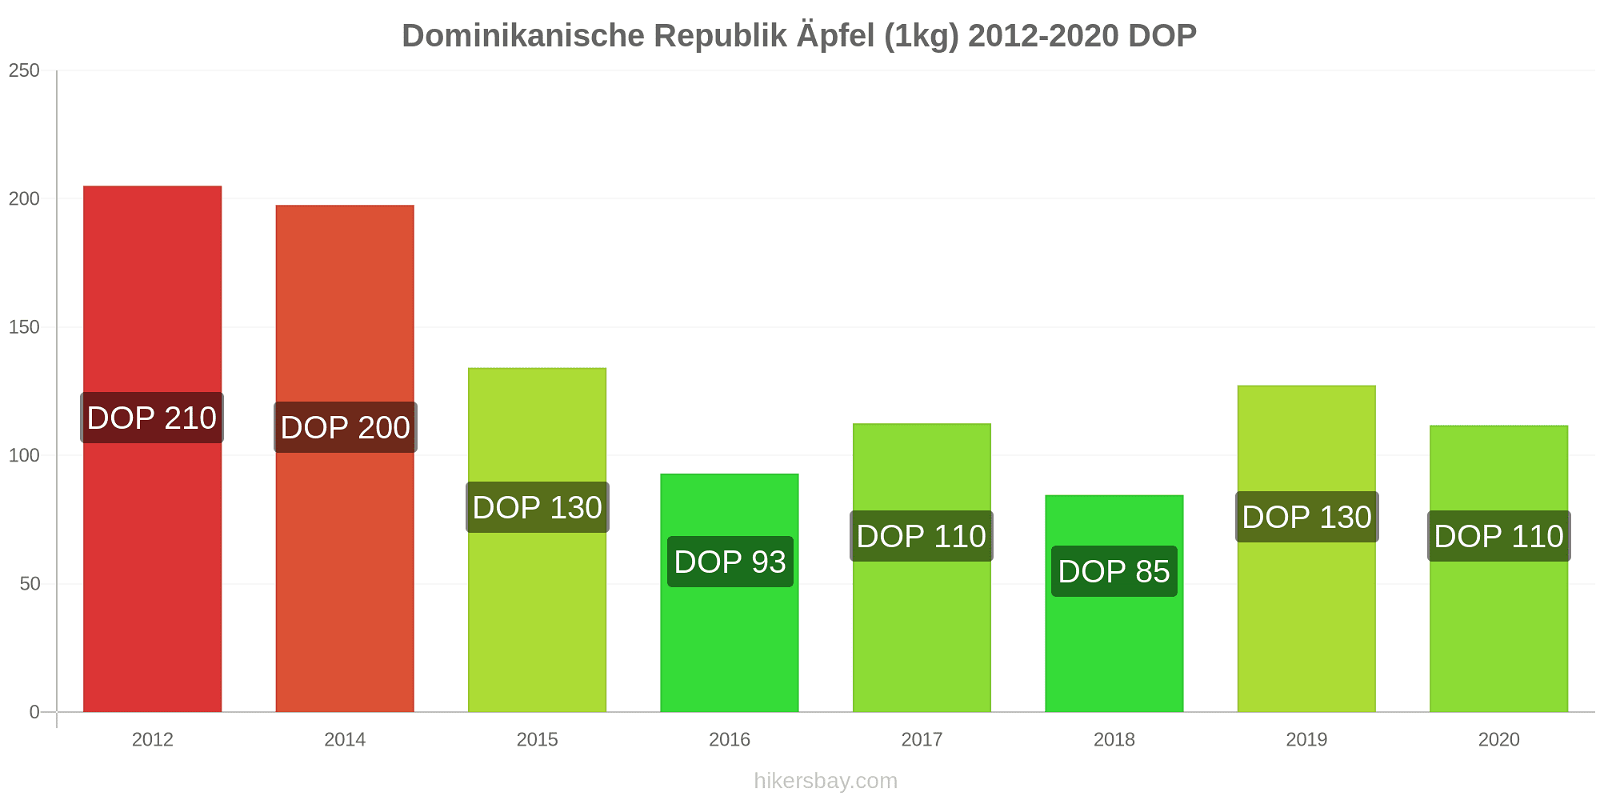 Dominikanische Republik Preisänderungen Äpfel (1kg) hikersbay.com